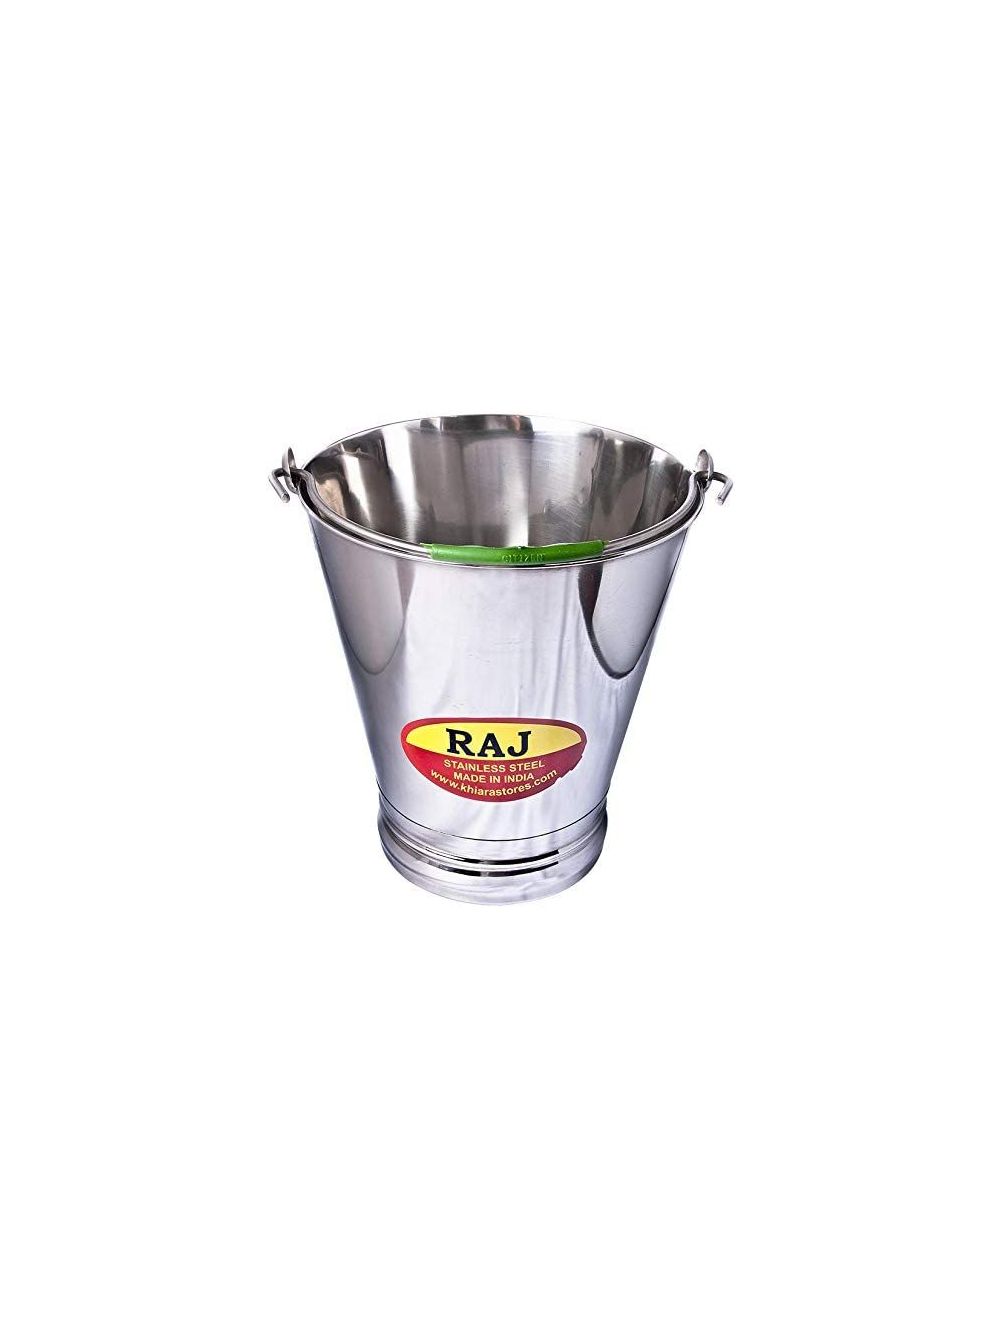 Raj Steel Bucket, Silver, 12 L, SB0006